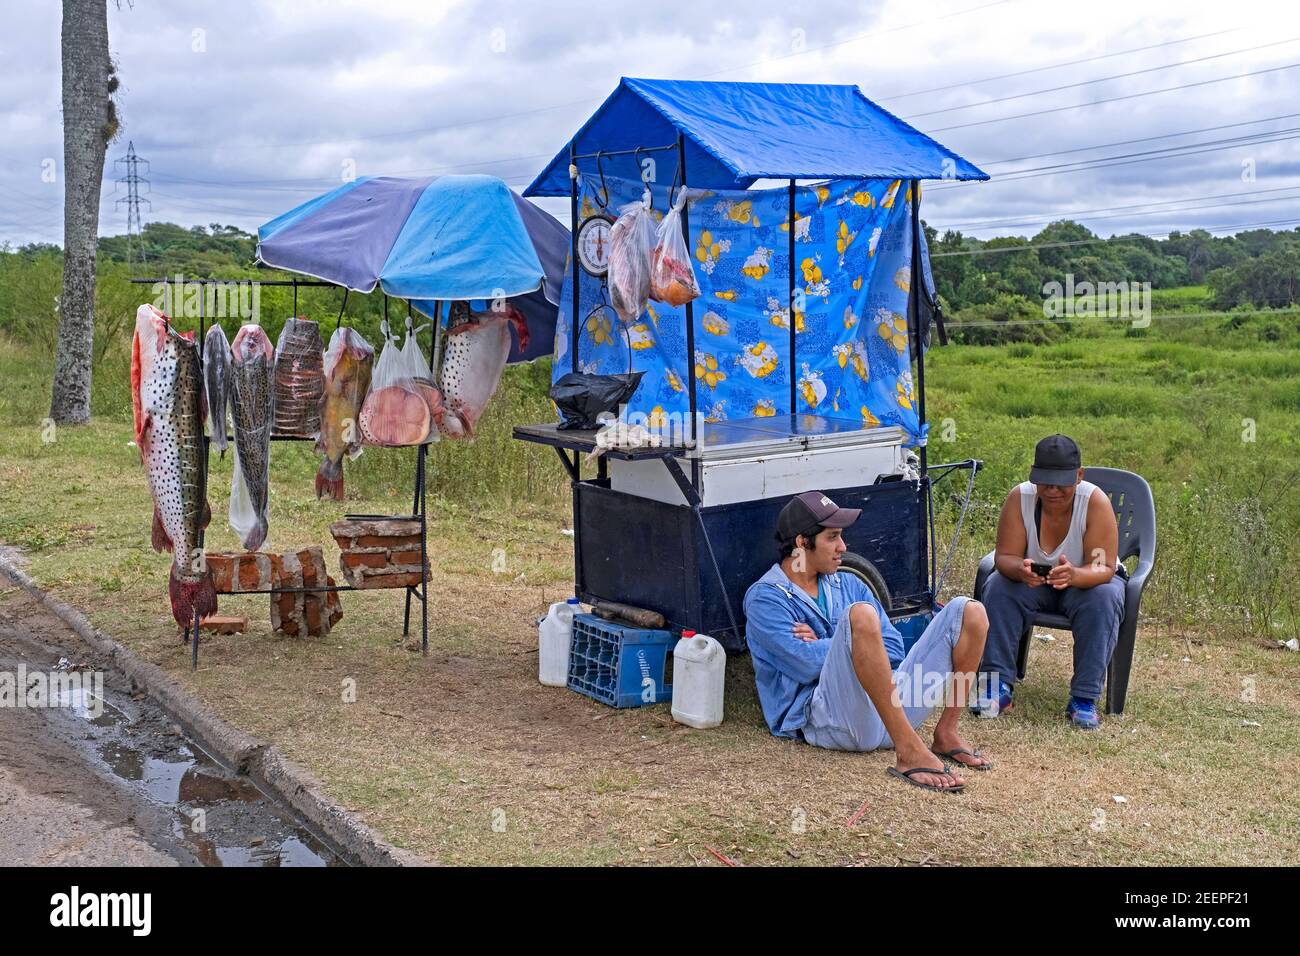 Vendeurs de rue / pêcheurs au stand de poissons de bord de route vendant des poissons d'eau douce du Rio Paraná / Parana River près de Resistencia, Chaco, Argentine. Banque D'Images